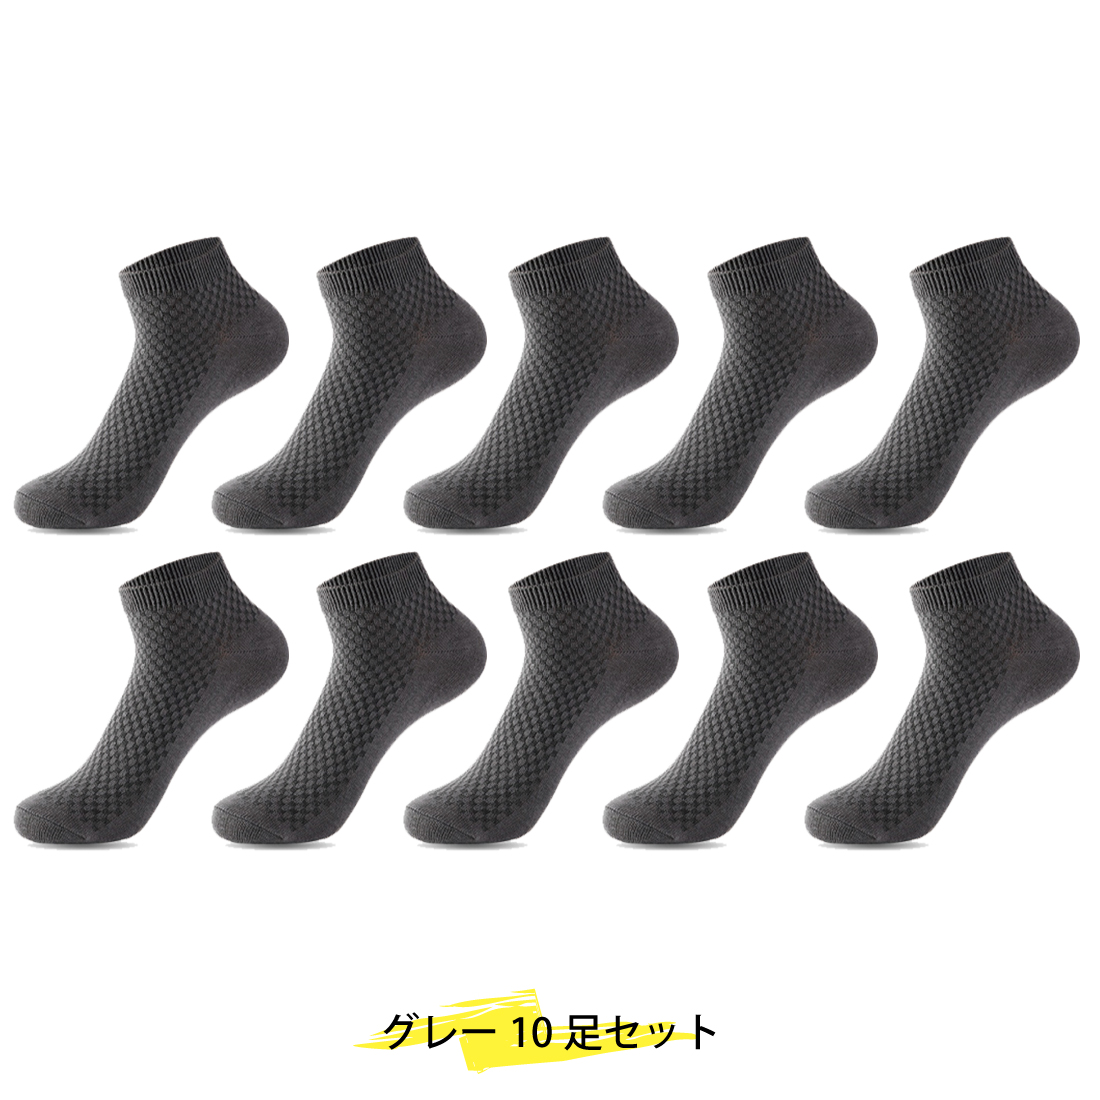 [10足セット]ソックス メンズ 靴下 消臭 竹繊維 抗菌 アンクル ショート